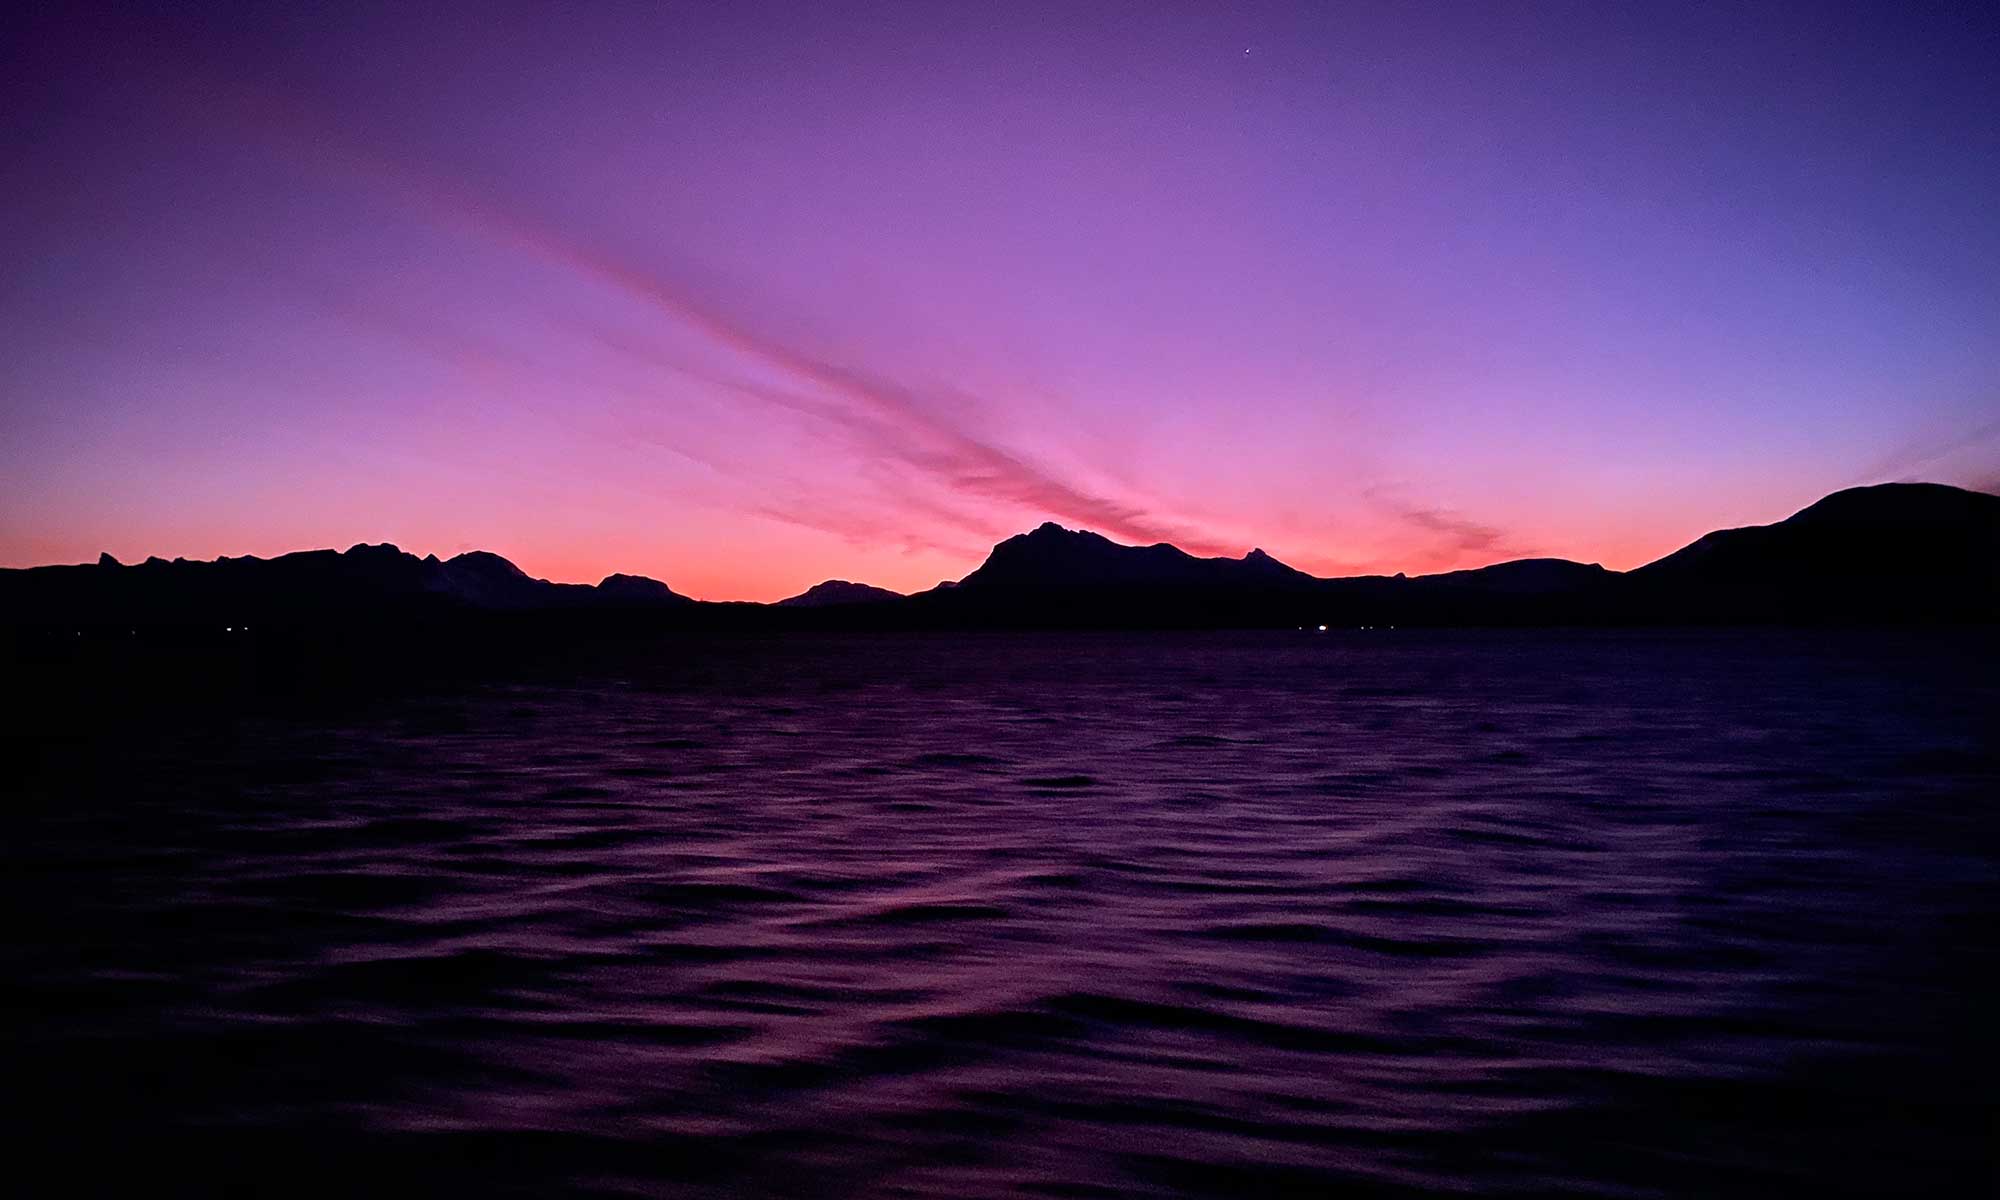 Das Bild zeigt einen Sonnenaufgang im Polarmeer